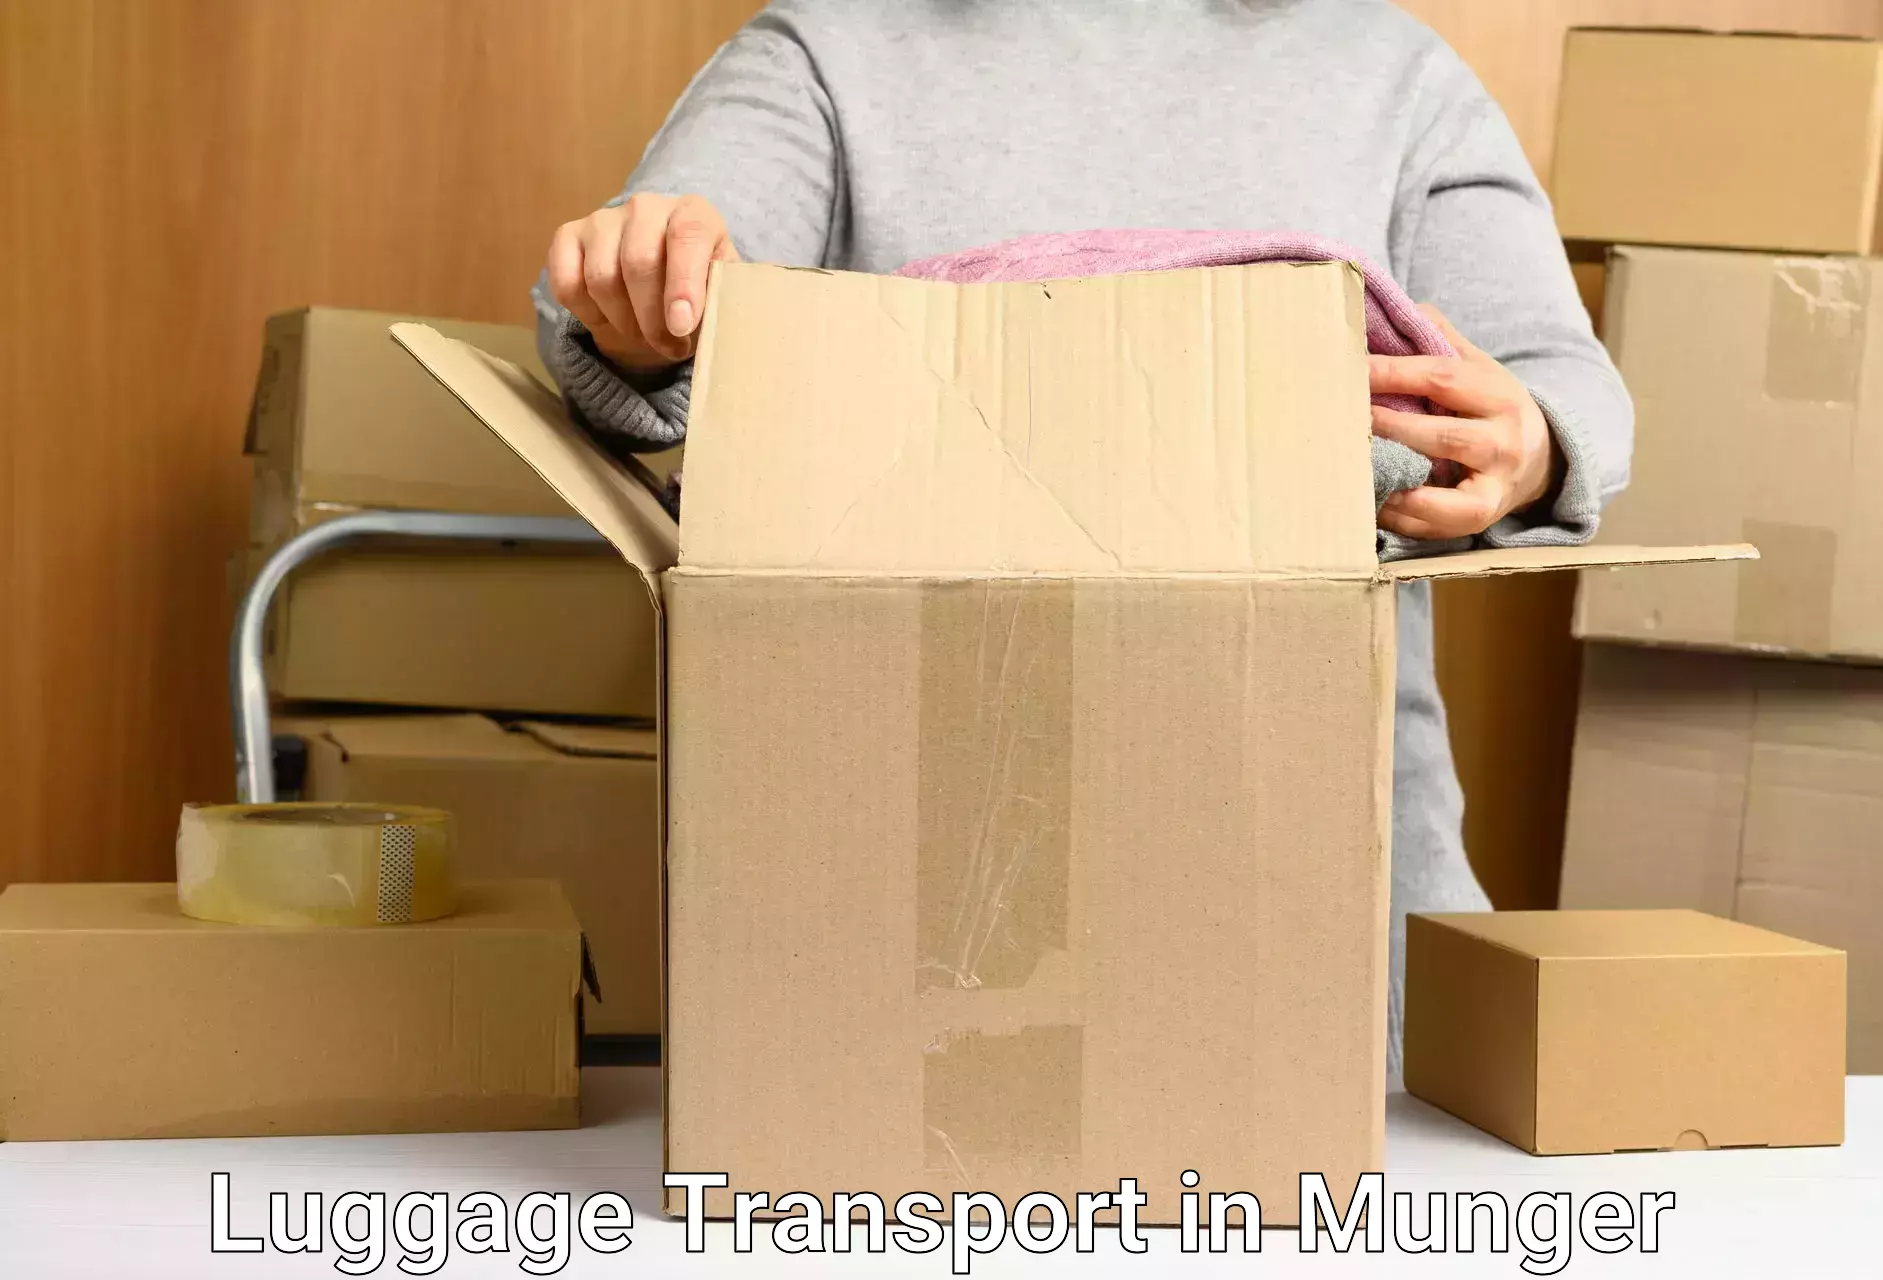 Luggage transit service in Munger